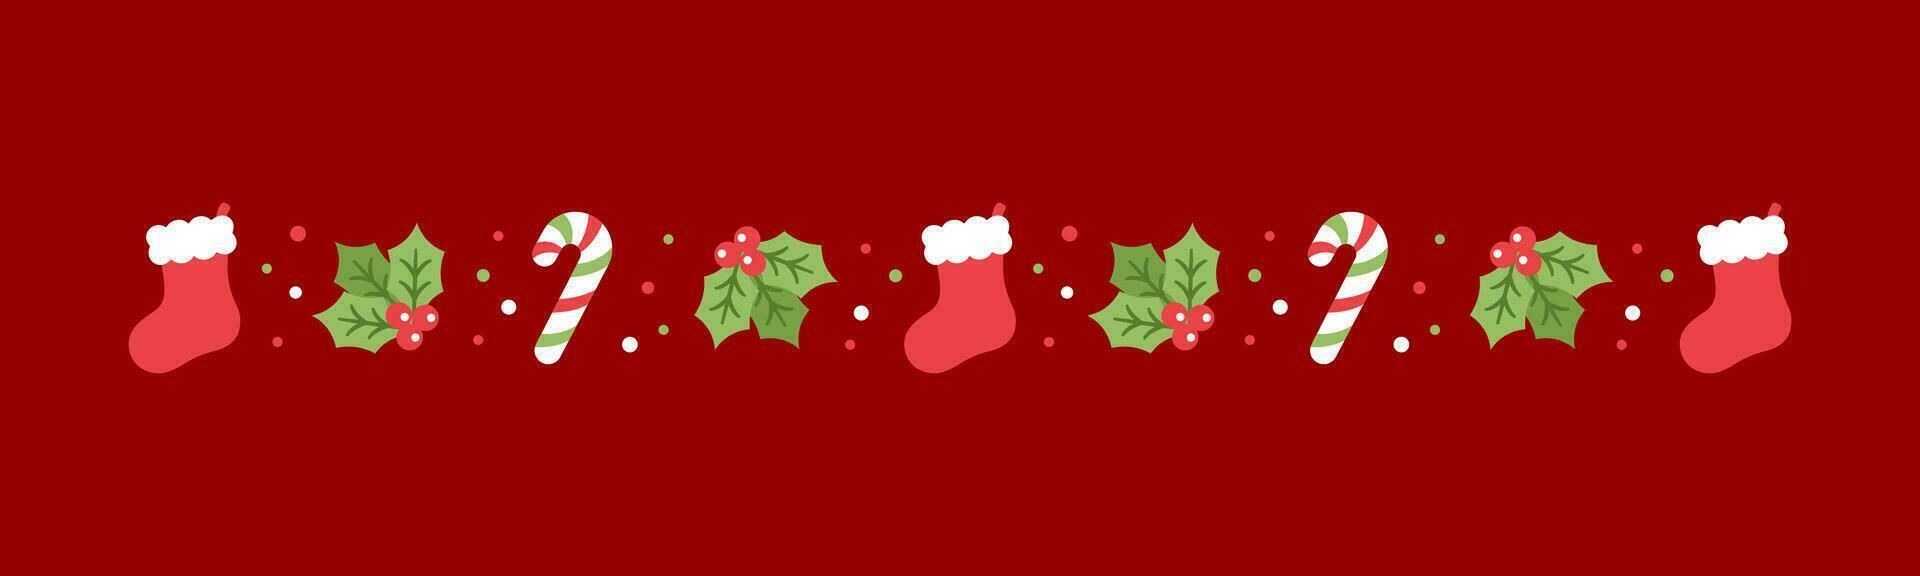 Navidad temática decorativo frontera y texto divisor, Navidad media, caramelo caña y muérdago modelo. vector ilustración.